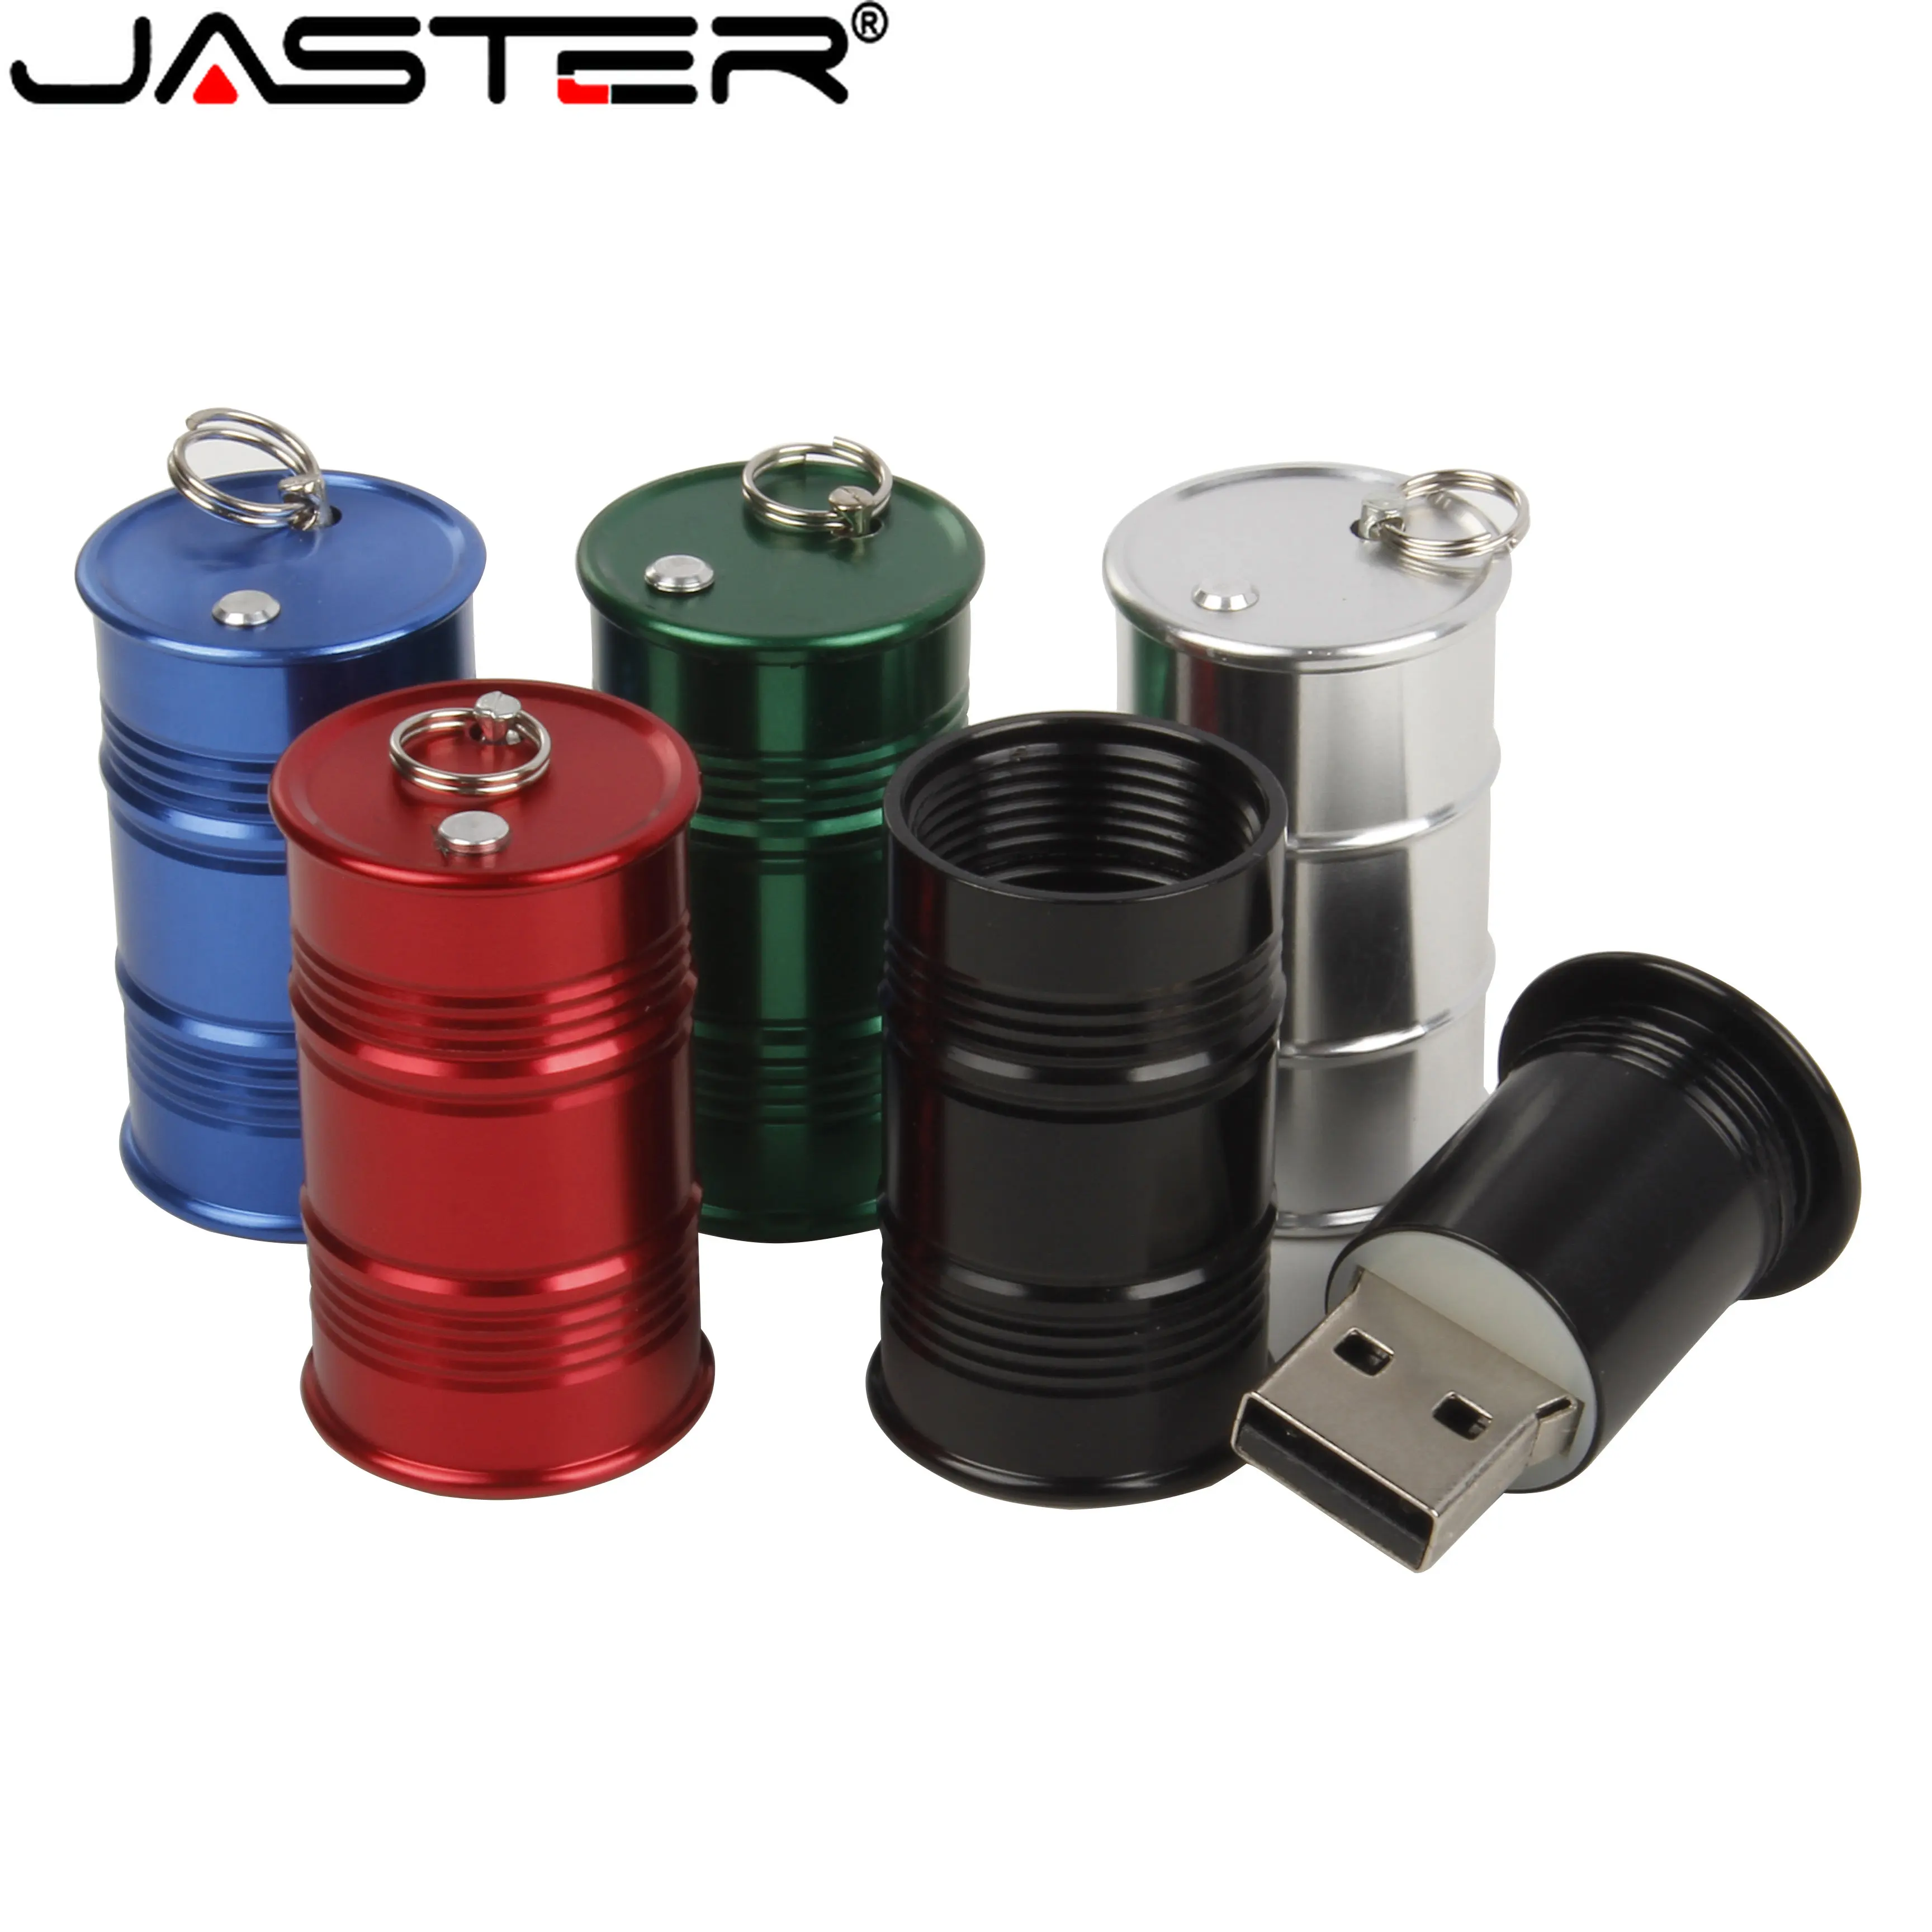 

JASTER 2.0Mini Metal Oil Tank Black USB Flash Drive Pen Drives Pendrive Free Shipping Items Memory Stick 4GB 8GB 16GB 32GB 64GB